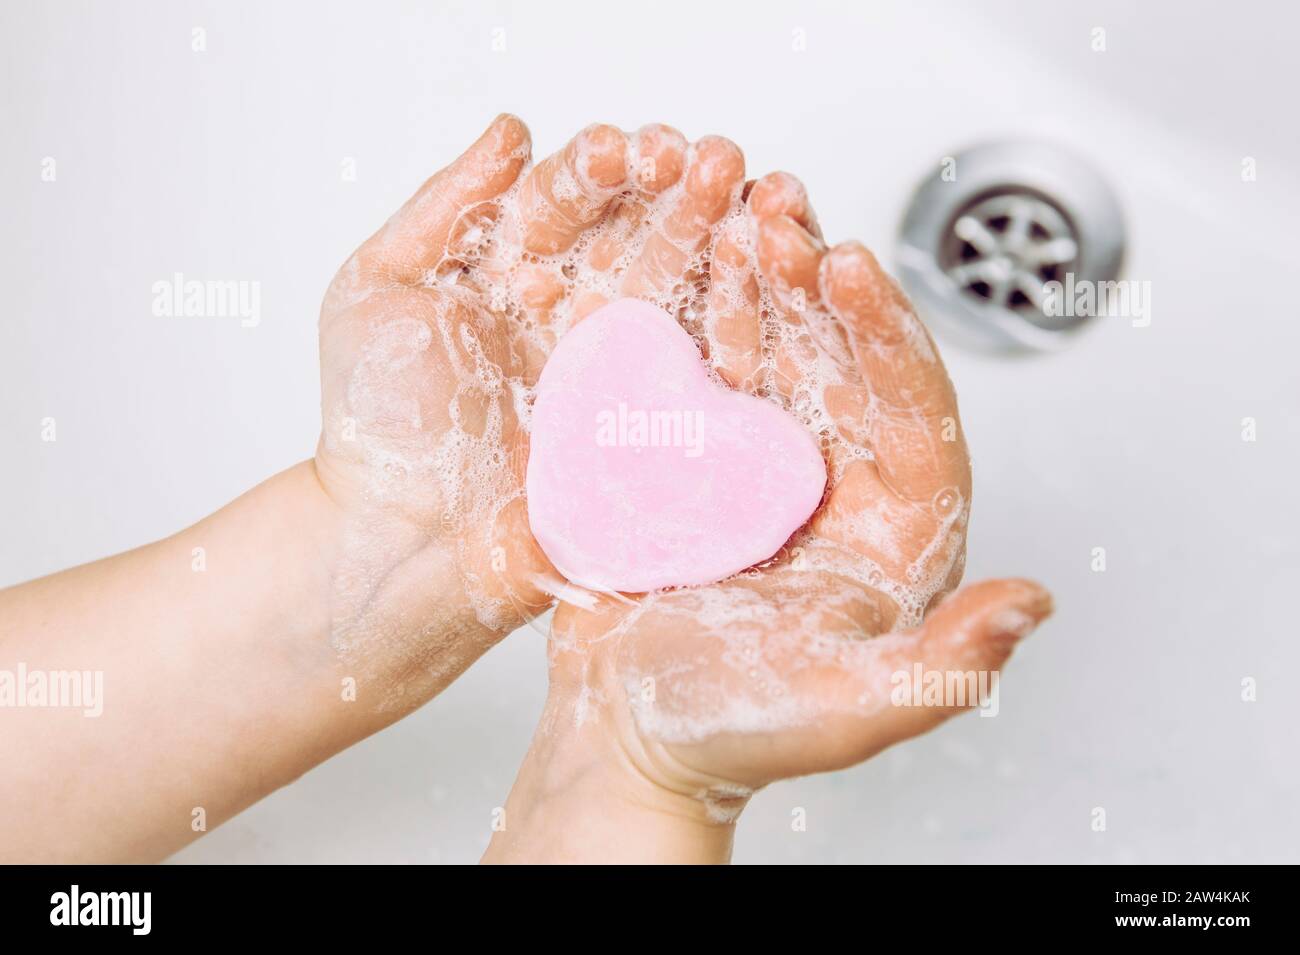 Bedeutung der persönlichen Hygiene. Flache Laienansicht des Kindes, das schmutzige Hände mit rosafarbener Seifenleiste in Herzform waschen kann, viel Schaum. Kopierbereich. Stockfoto